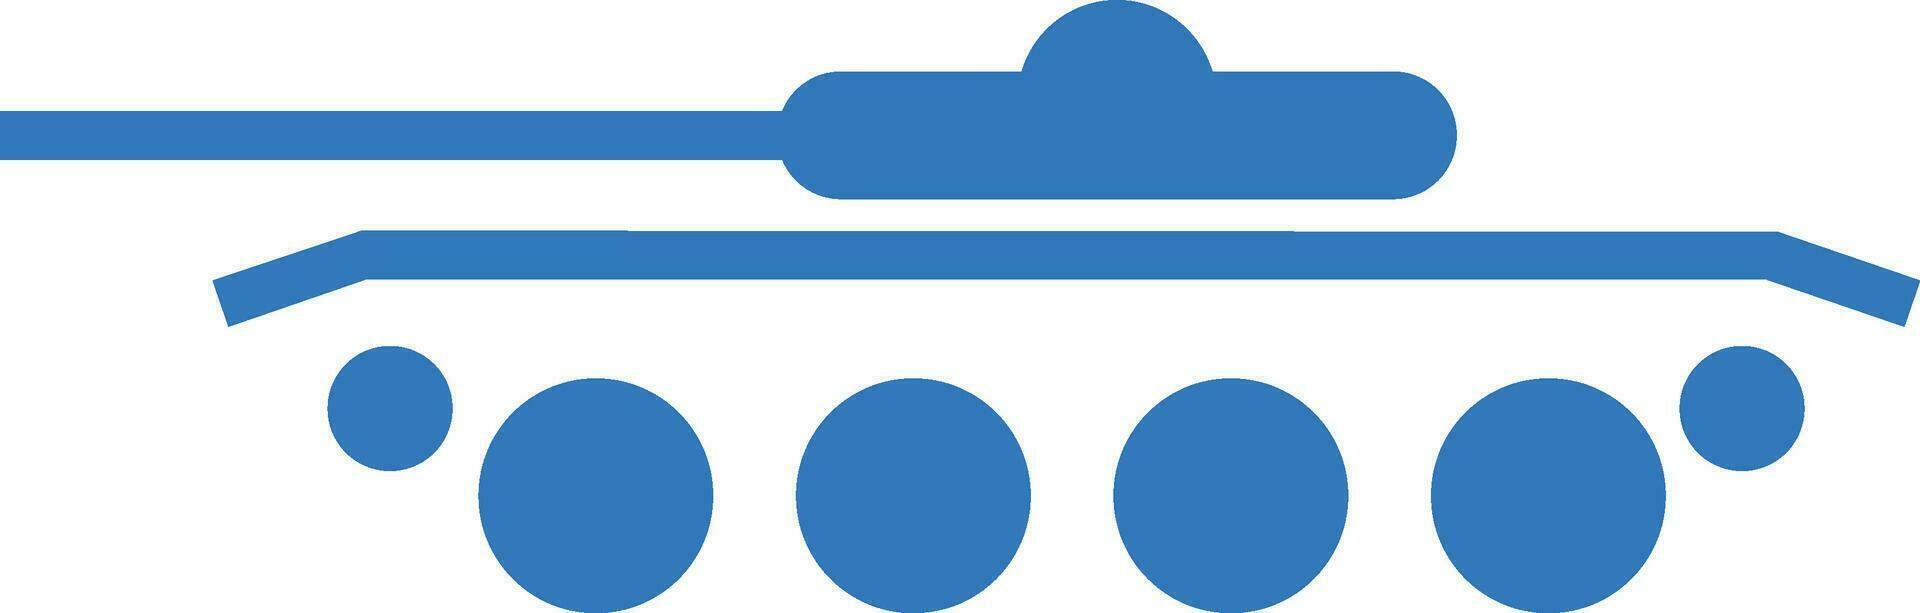 Blue artillery gun icon vector. vector